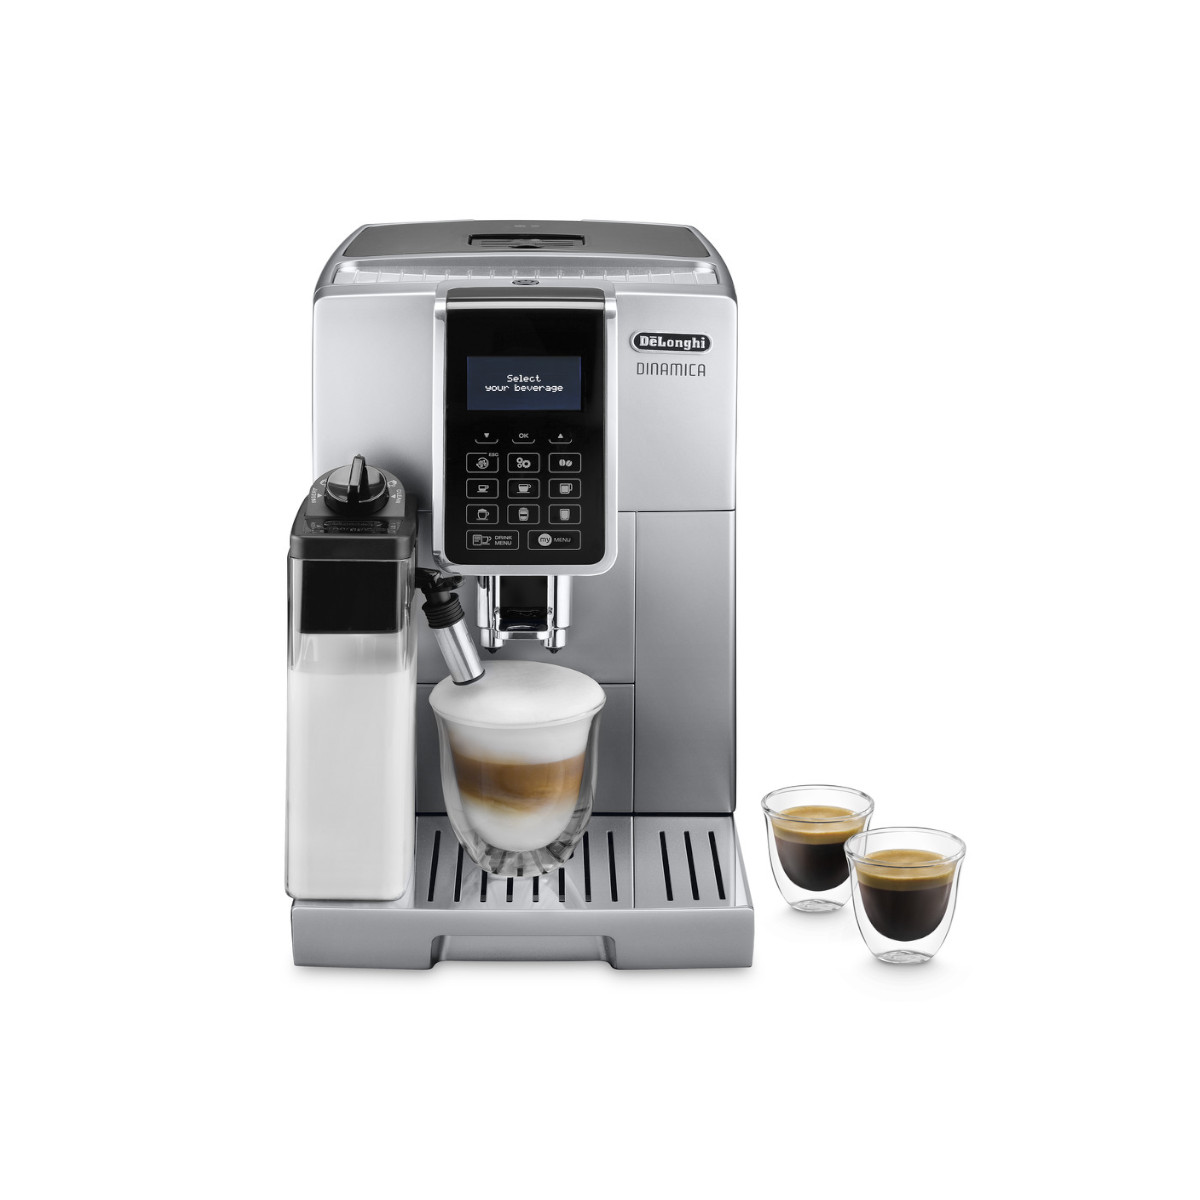 цена Автоматическая кофемашина DeLonghi Dinamica ECAM350.75.S, серебристый